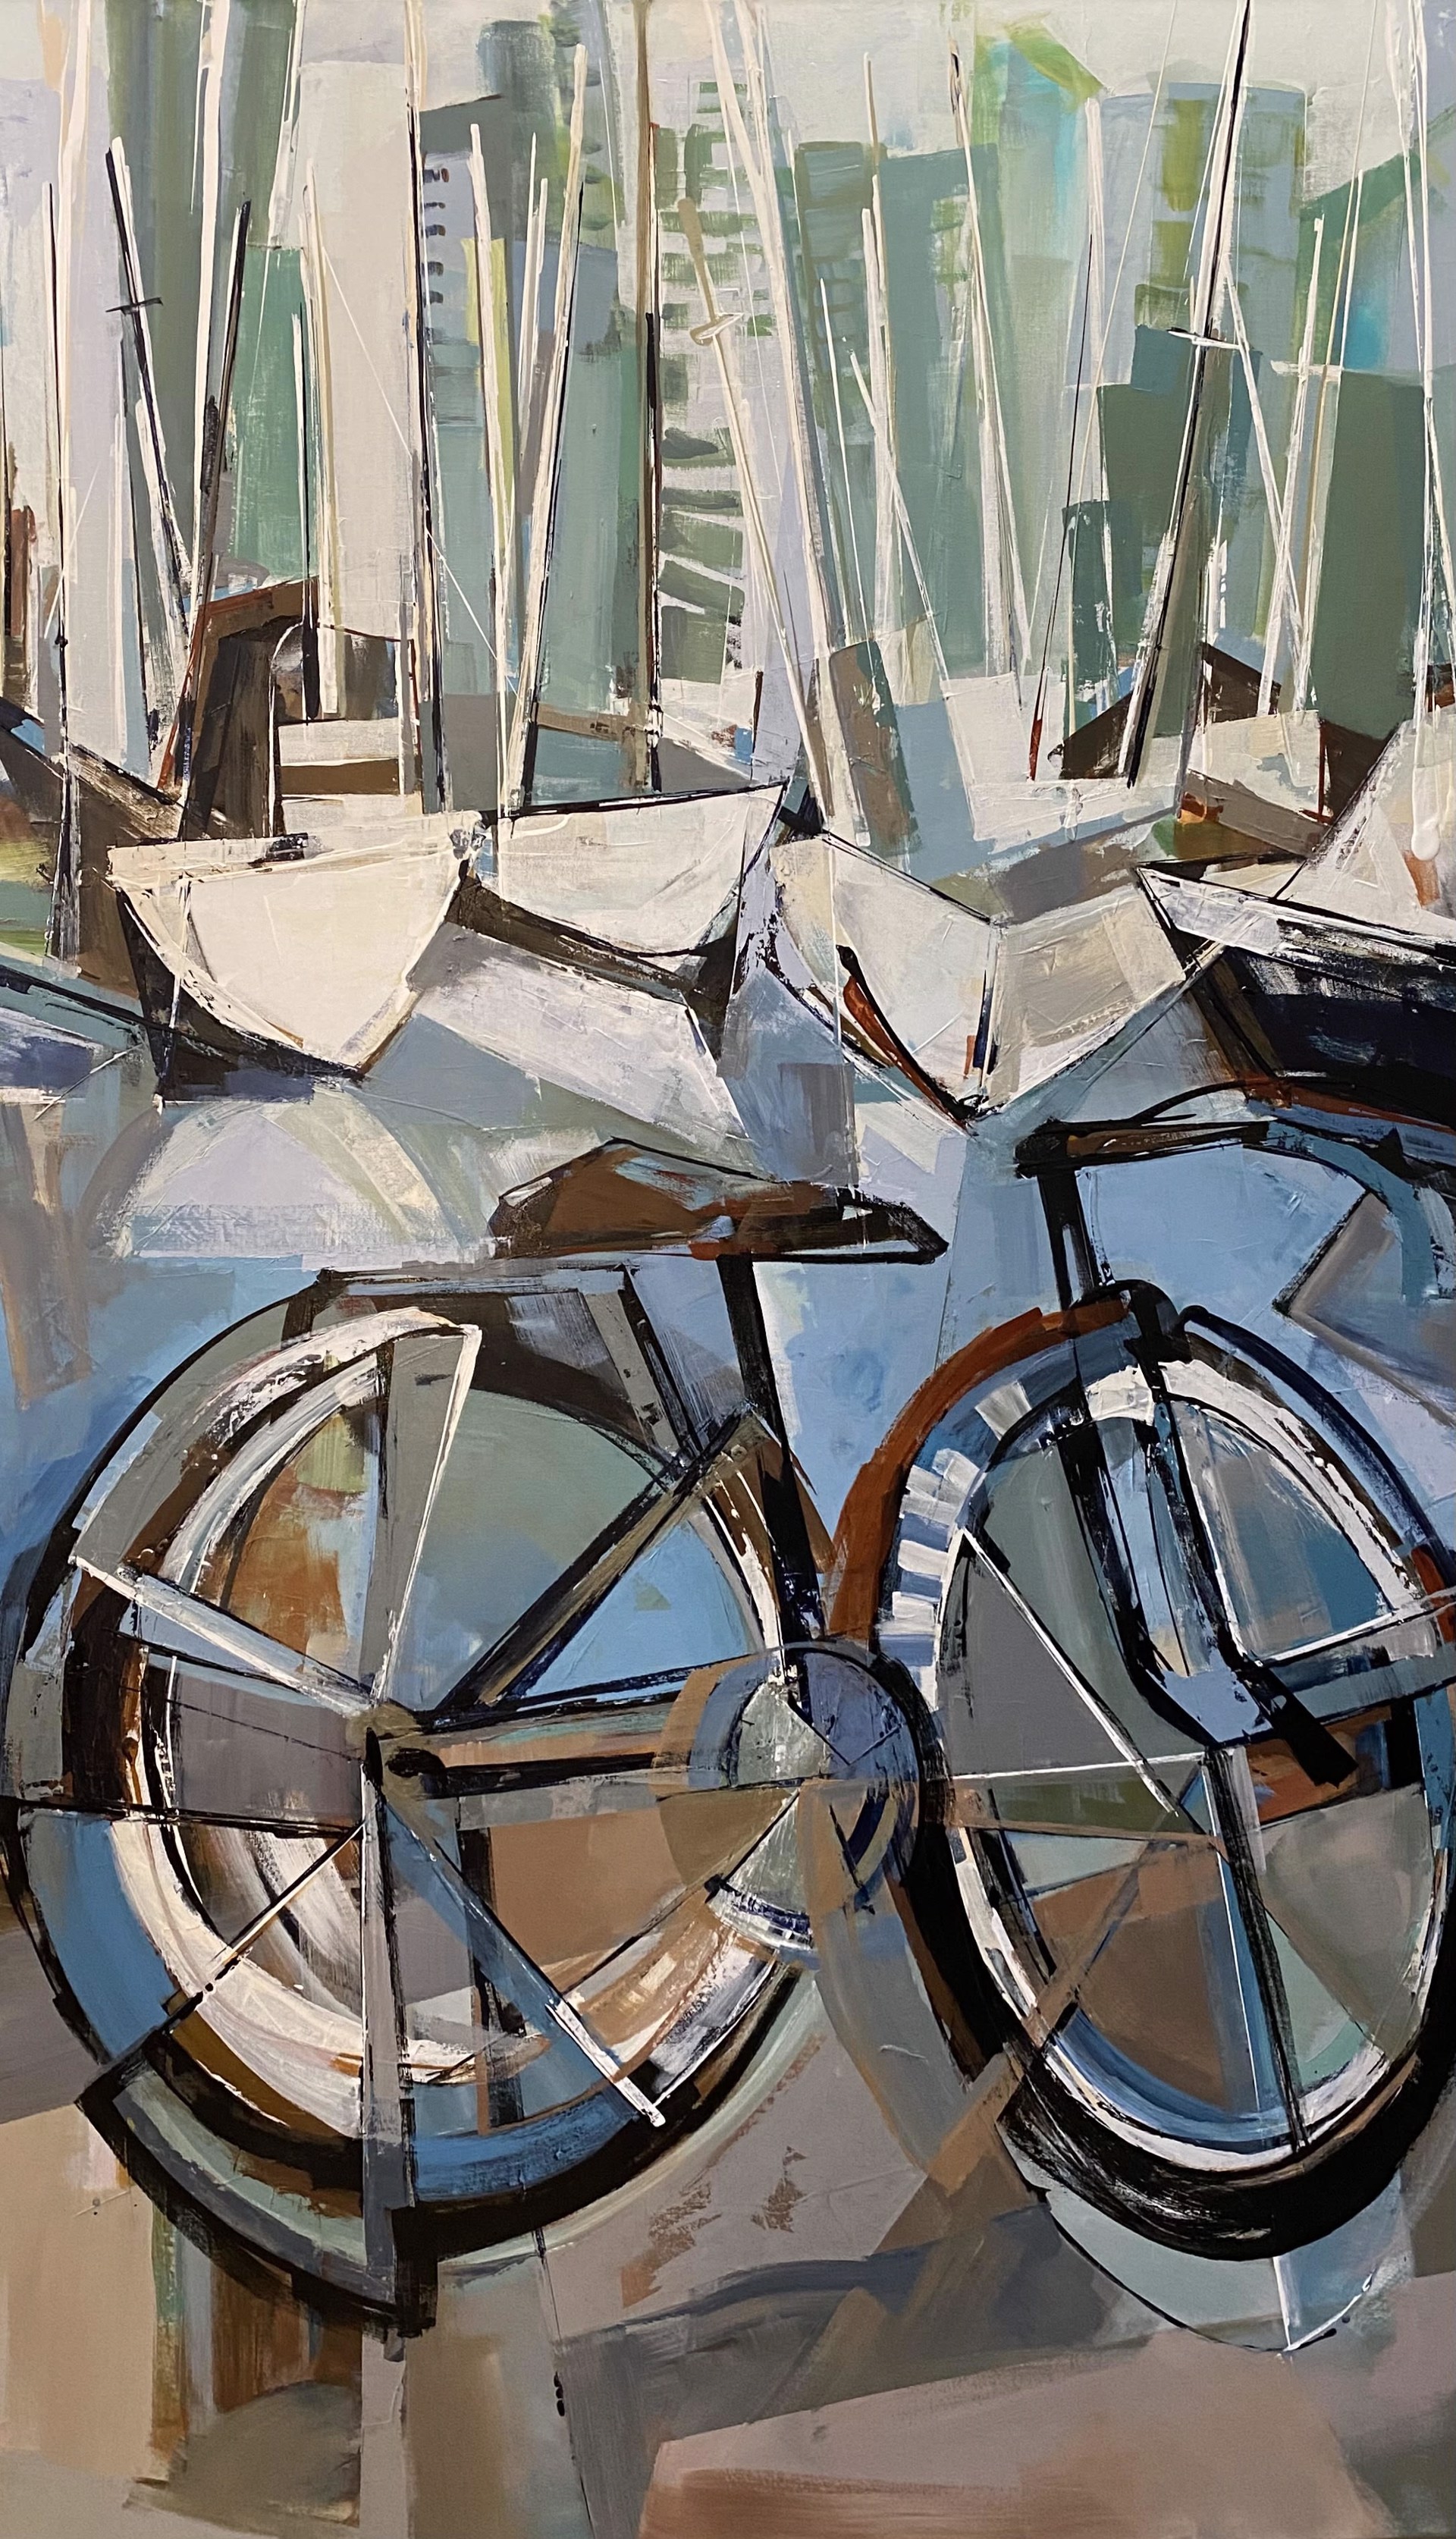 False Creek Bike by KATIE LOIS LEAHUL